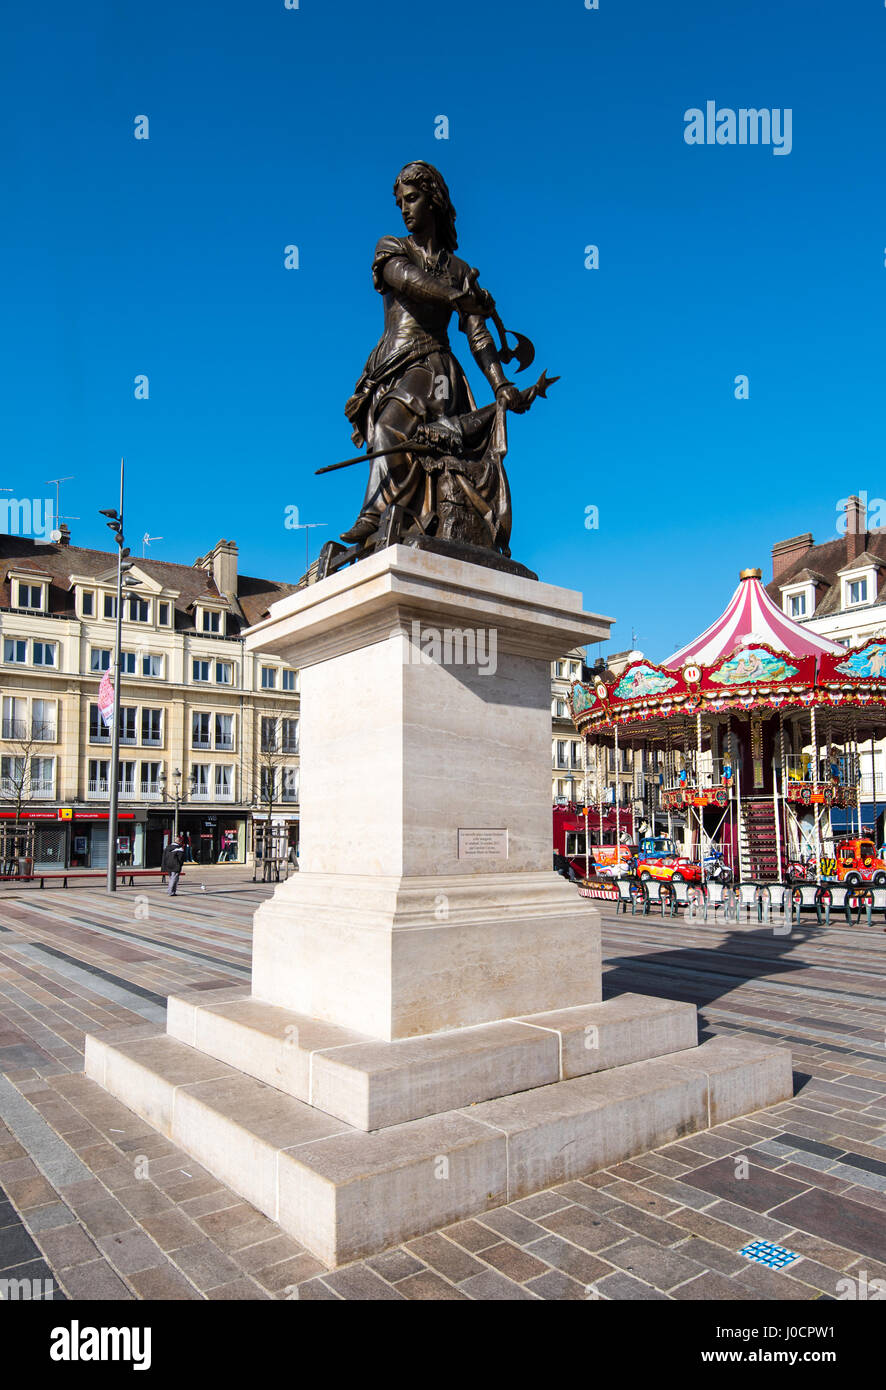 Statue de Joanne Fourquet à Beauvais, France. Elle était connue comme Joanne Hachette quand elle a contribué à empêcher l'caspture de la ville en 1456. Banque D'Images